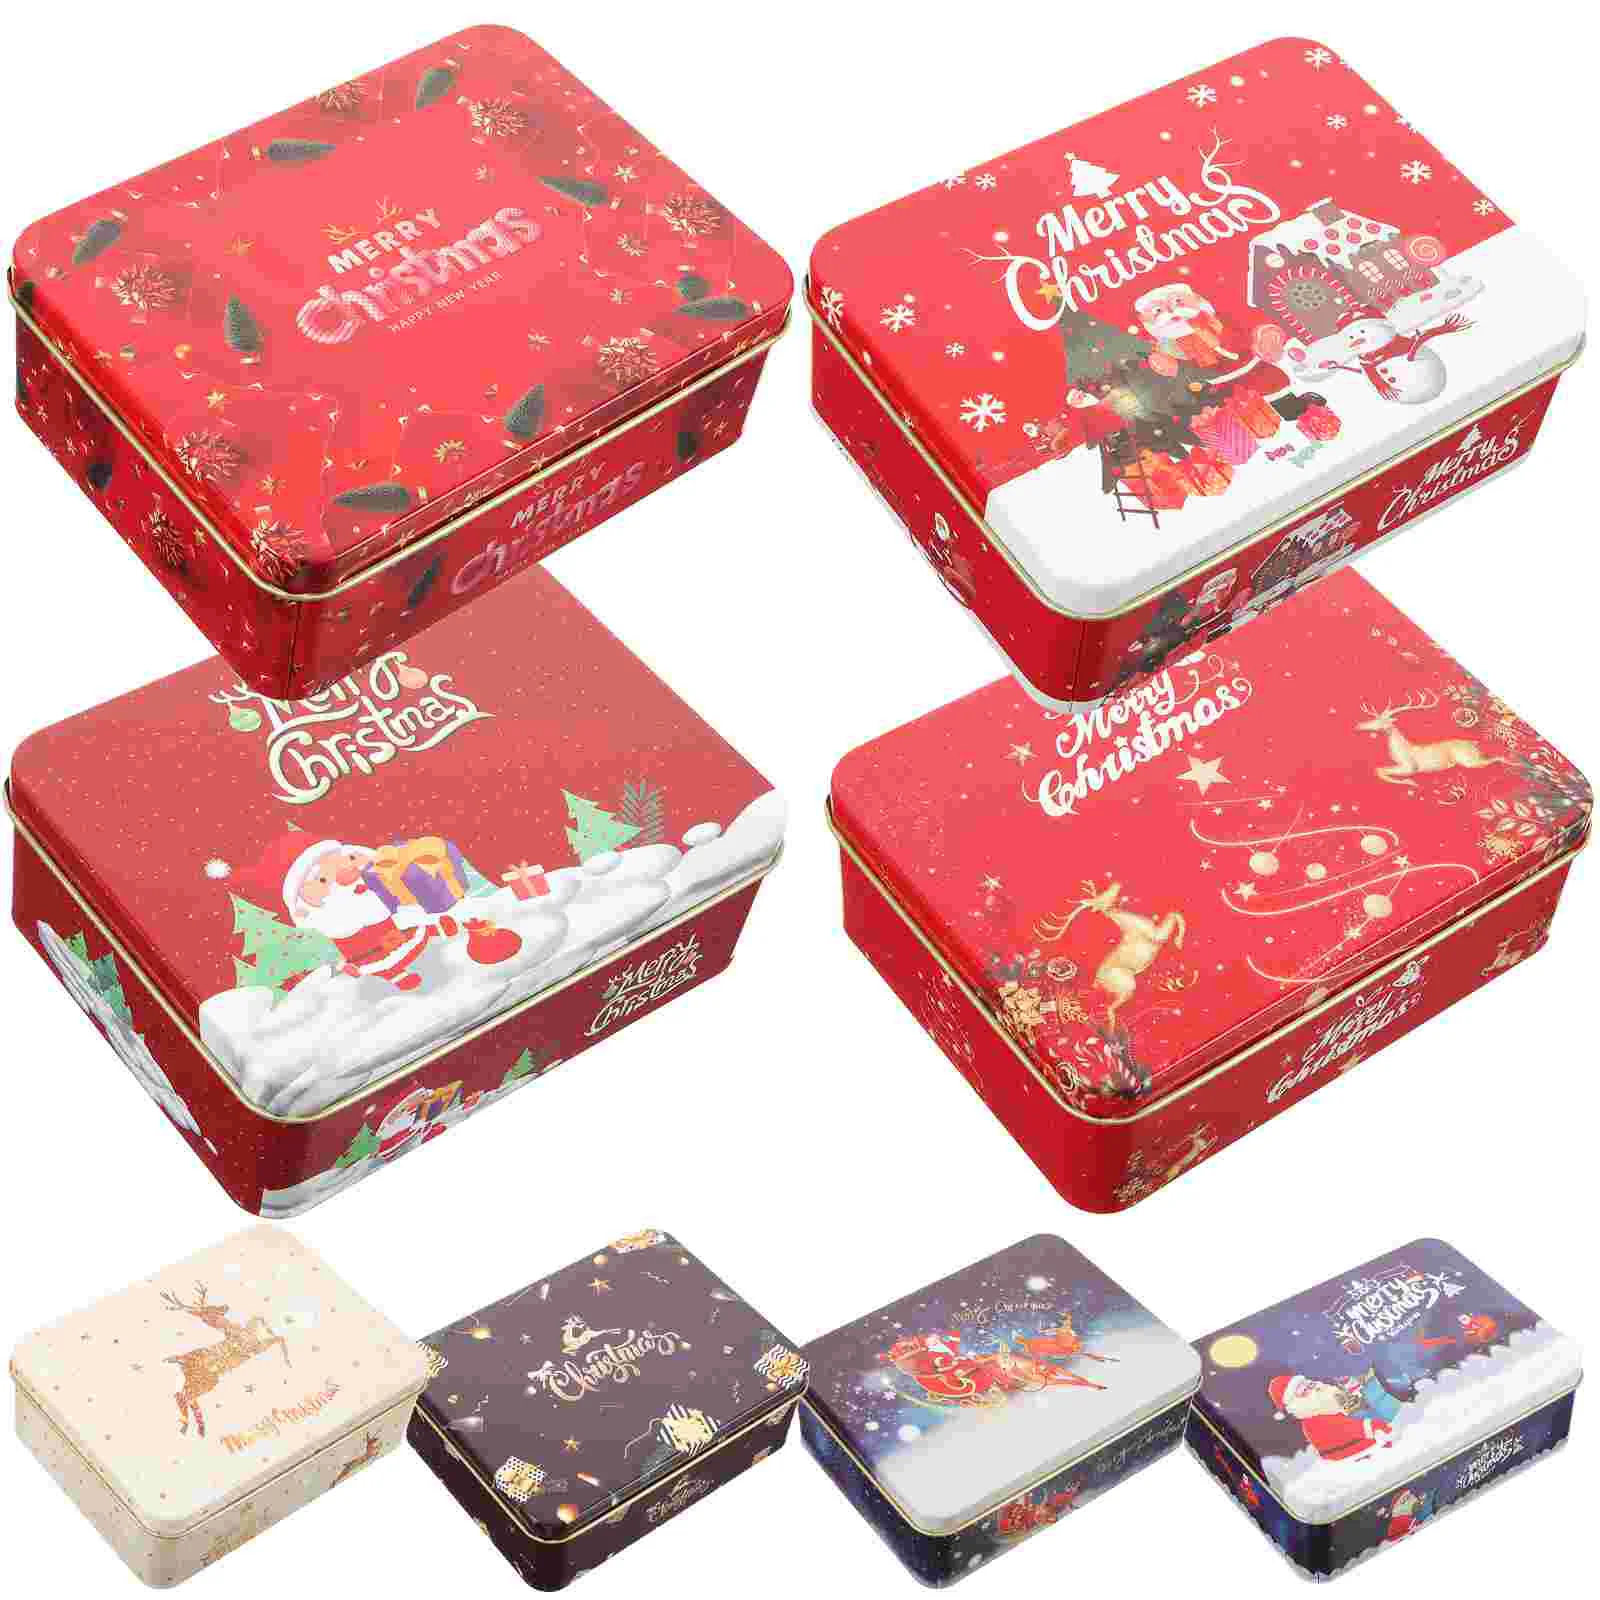 

Рождественская подарочная карта, жестяные коробки, рождественские металлические подарочные коробки, подарочные коробки с крышками, жестяная коробка для карт 12 см, благословение, коробка для карт